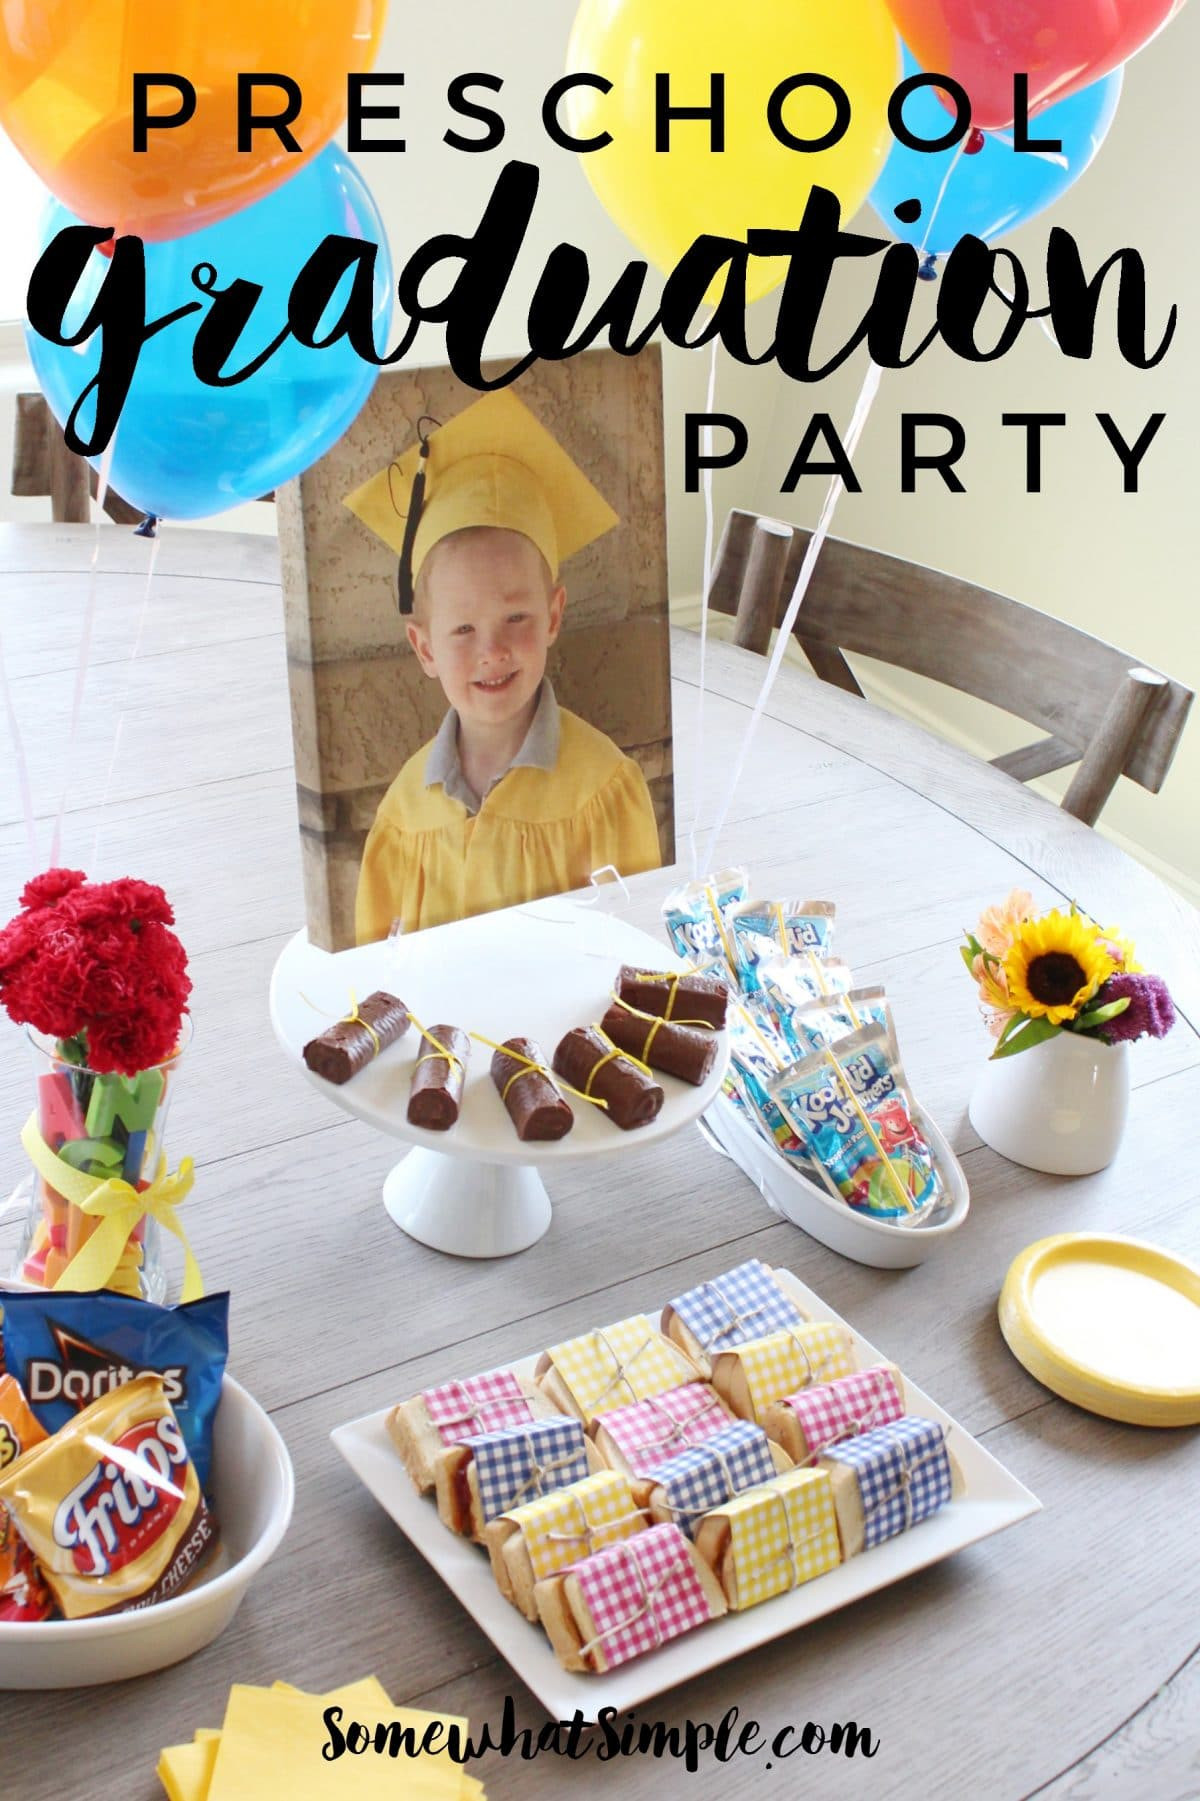 Preschool Graduation Party Ideas
 Preschool Graduation Party Somewhat Simple